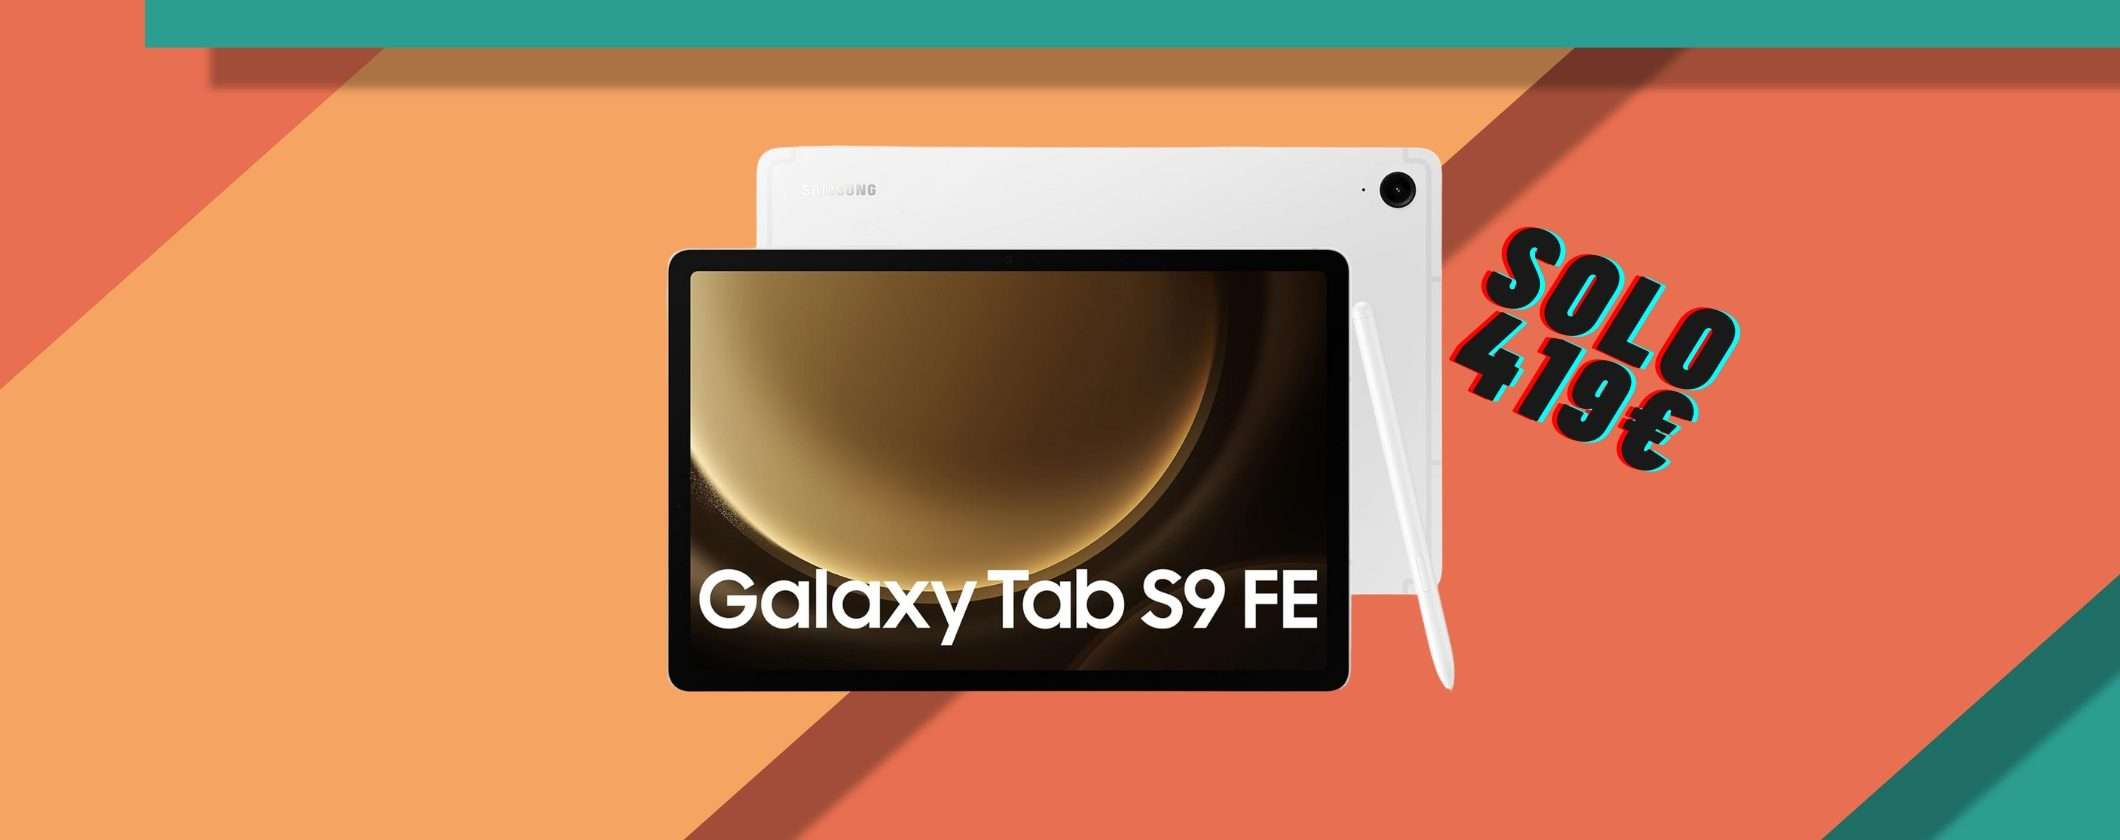 Samsung Galaxy Tab S9 FE: solo 419€ su Amazon